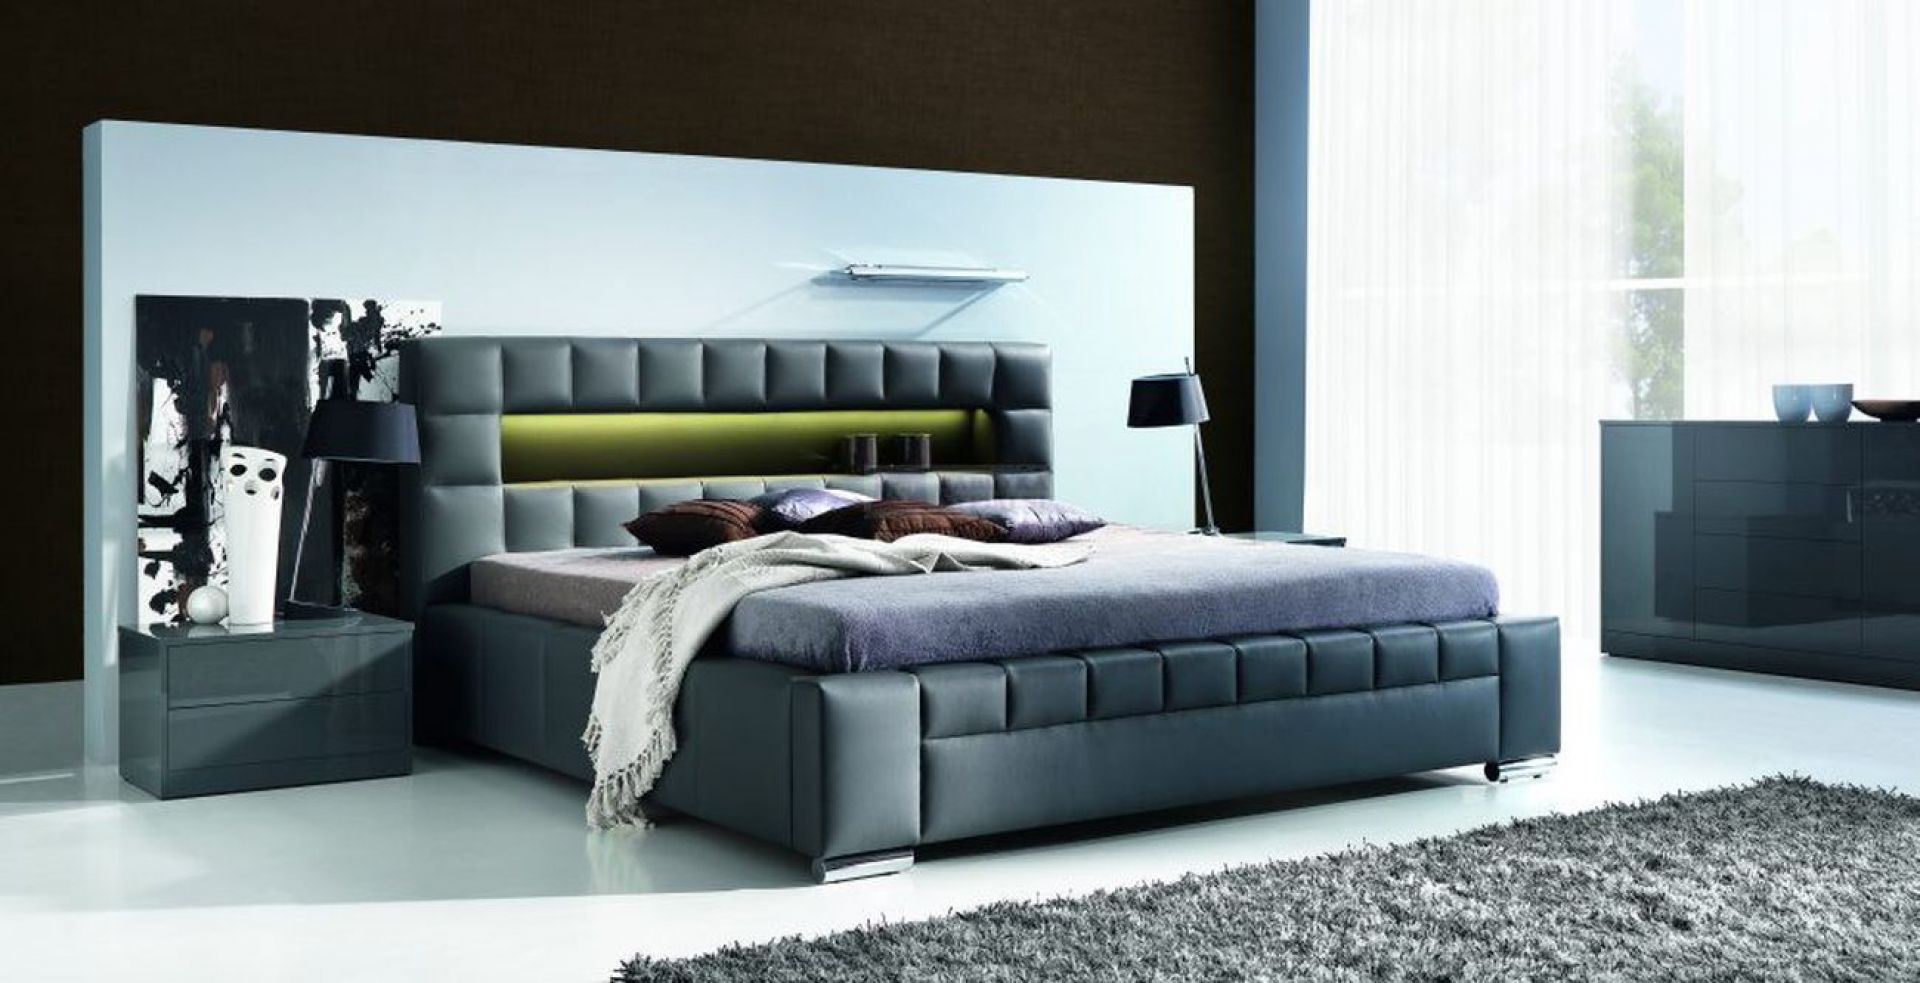 Łóżko Cezar wyróżnia się ciekawą linią stylistyczną, kształtem przypominającą budowlę z klocków. Element z wbudowanym podświetleniem LED wzmacnia nowoczesny charakter łóżka. Fot. Stolwit Meble